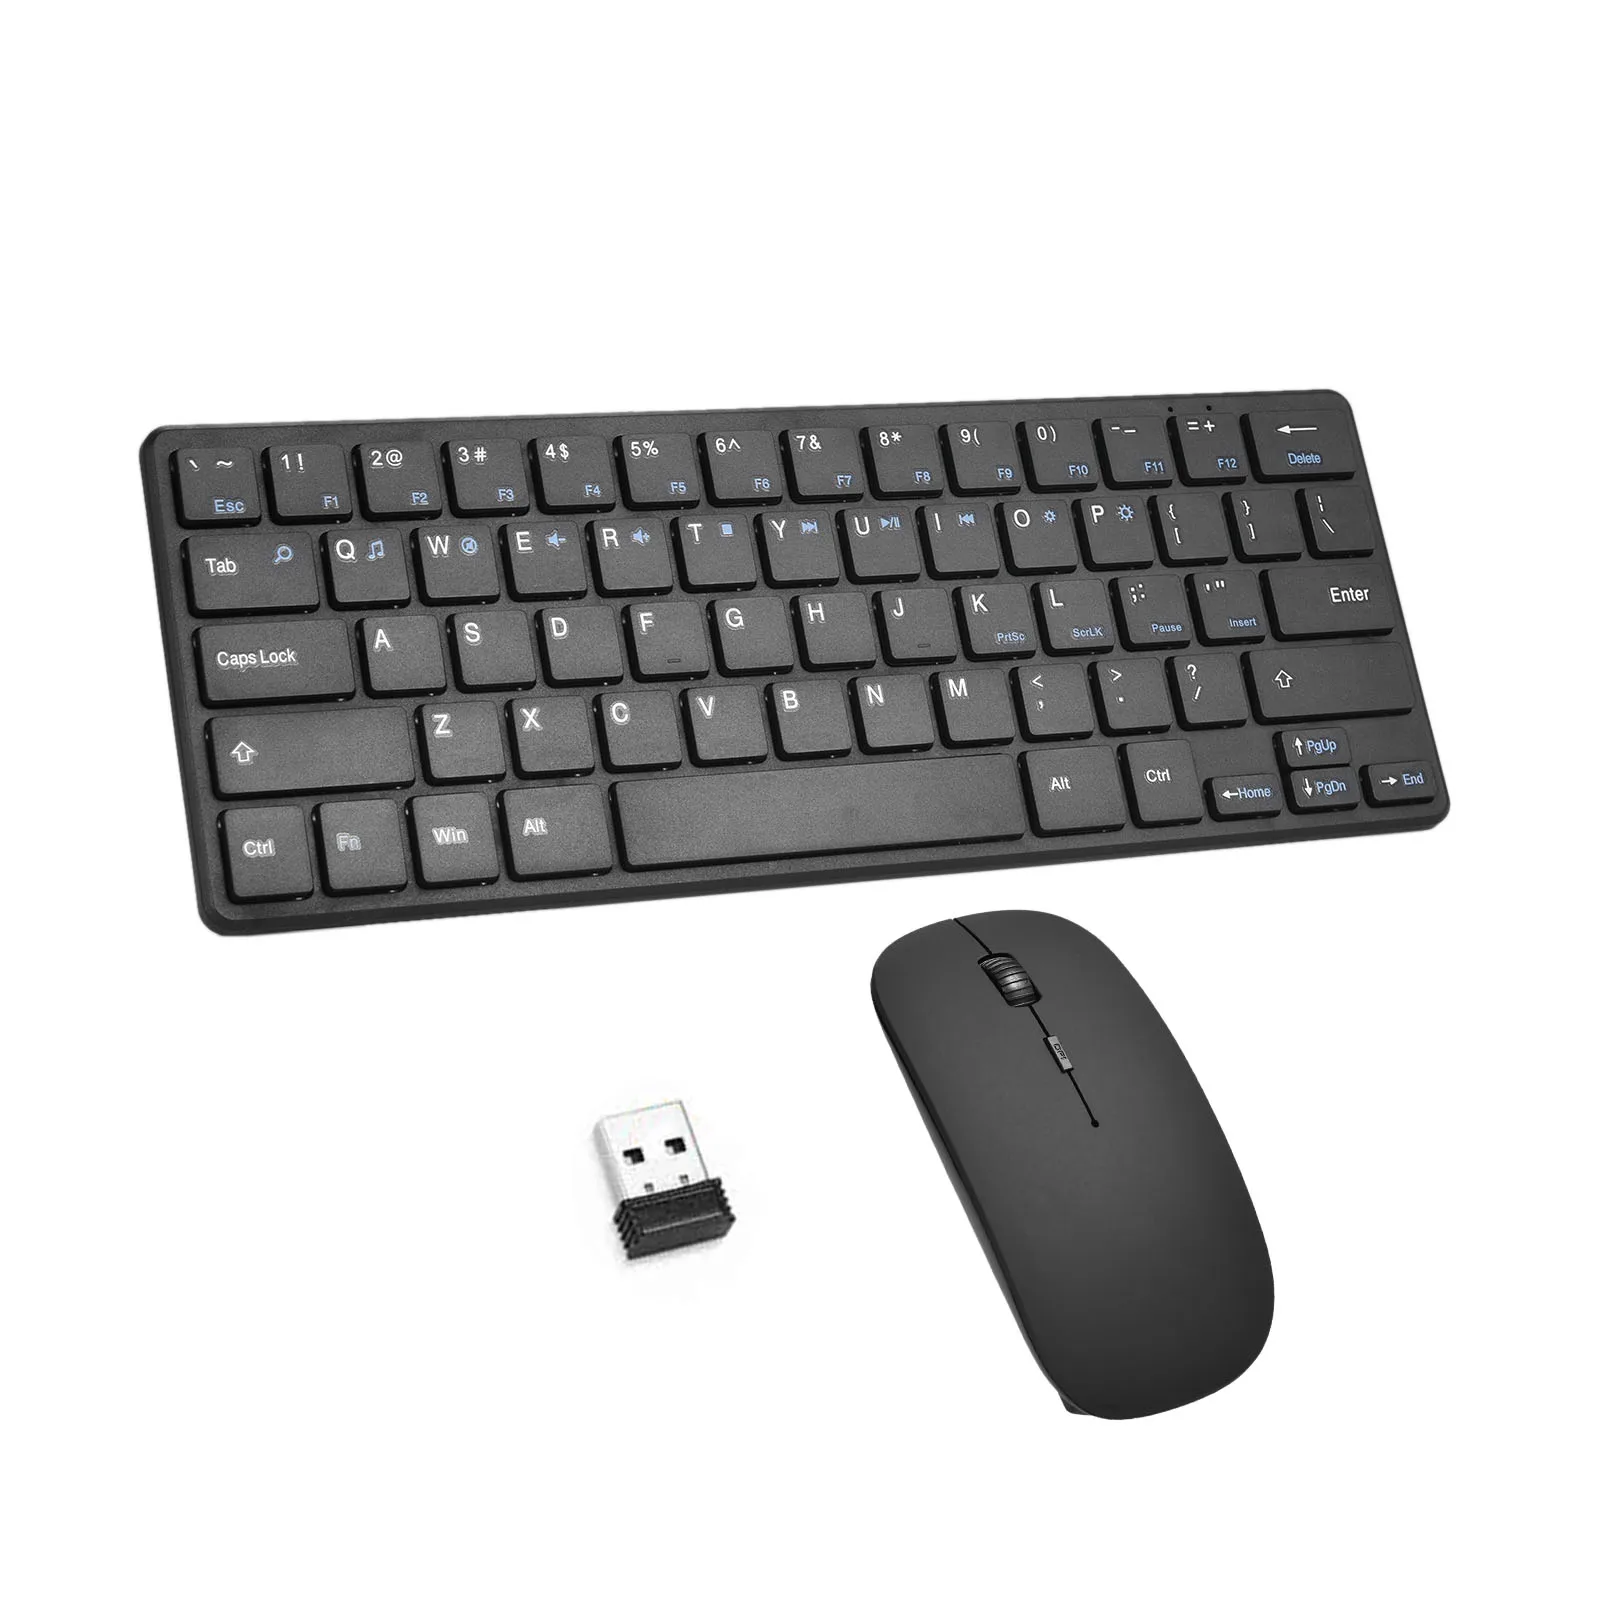 

Беспроводная клавиатура и мышь комбо с приемником для Windows PC 2,4G беспроводная мышь Клавиатура Набор 64 клавиш FN функциональные клавиши 96 клав...